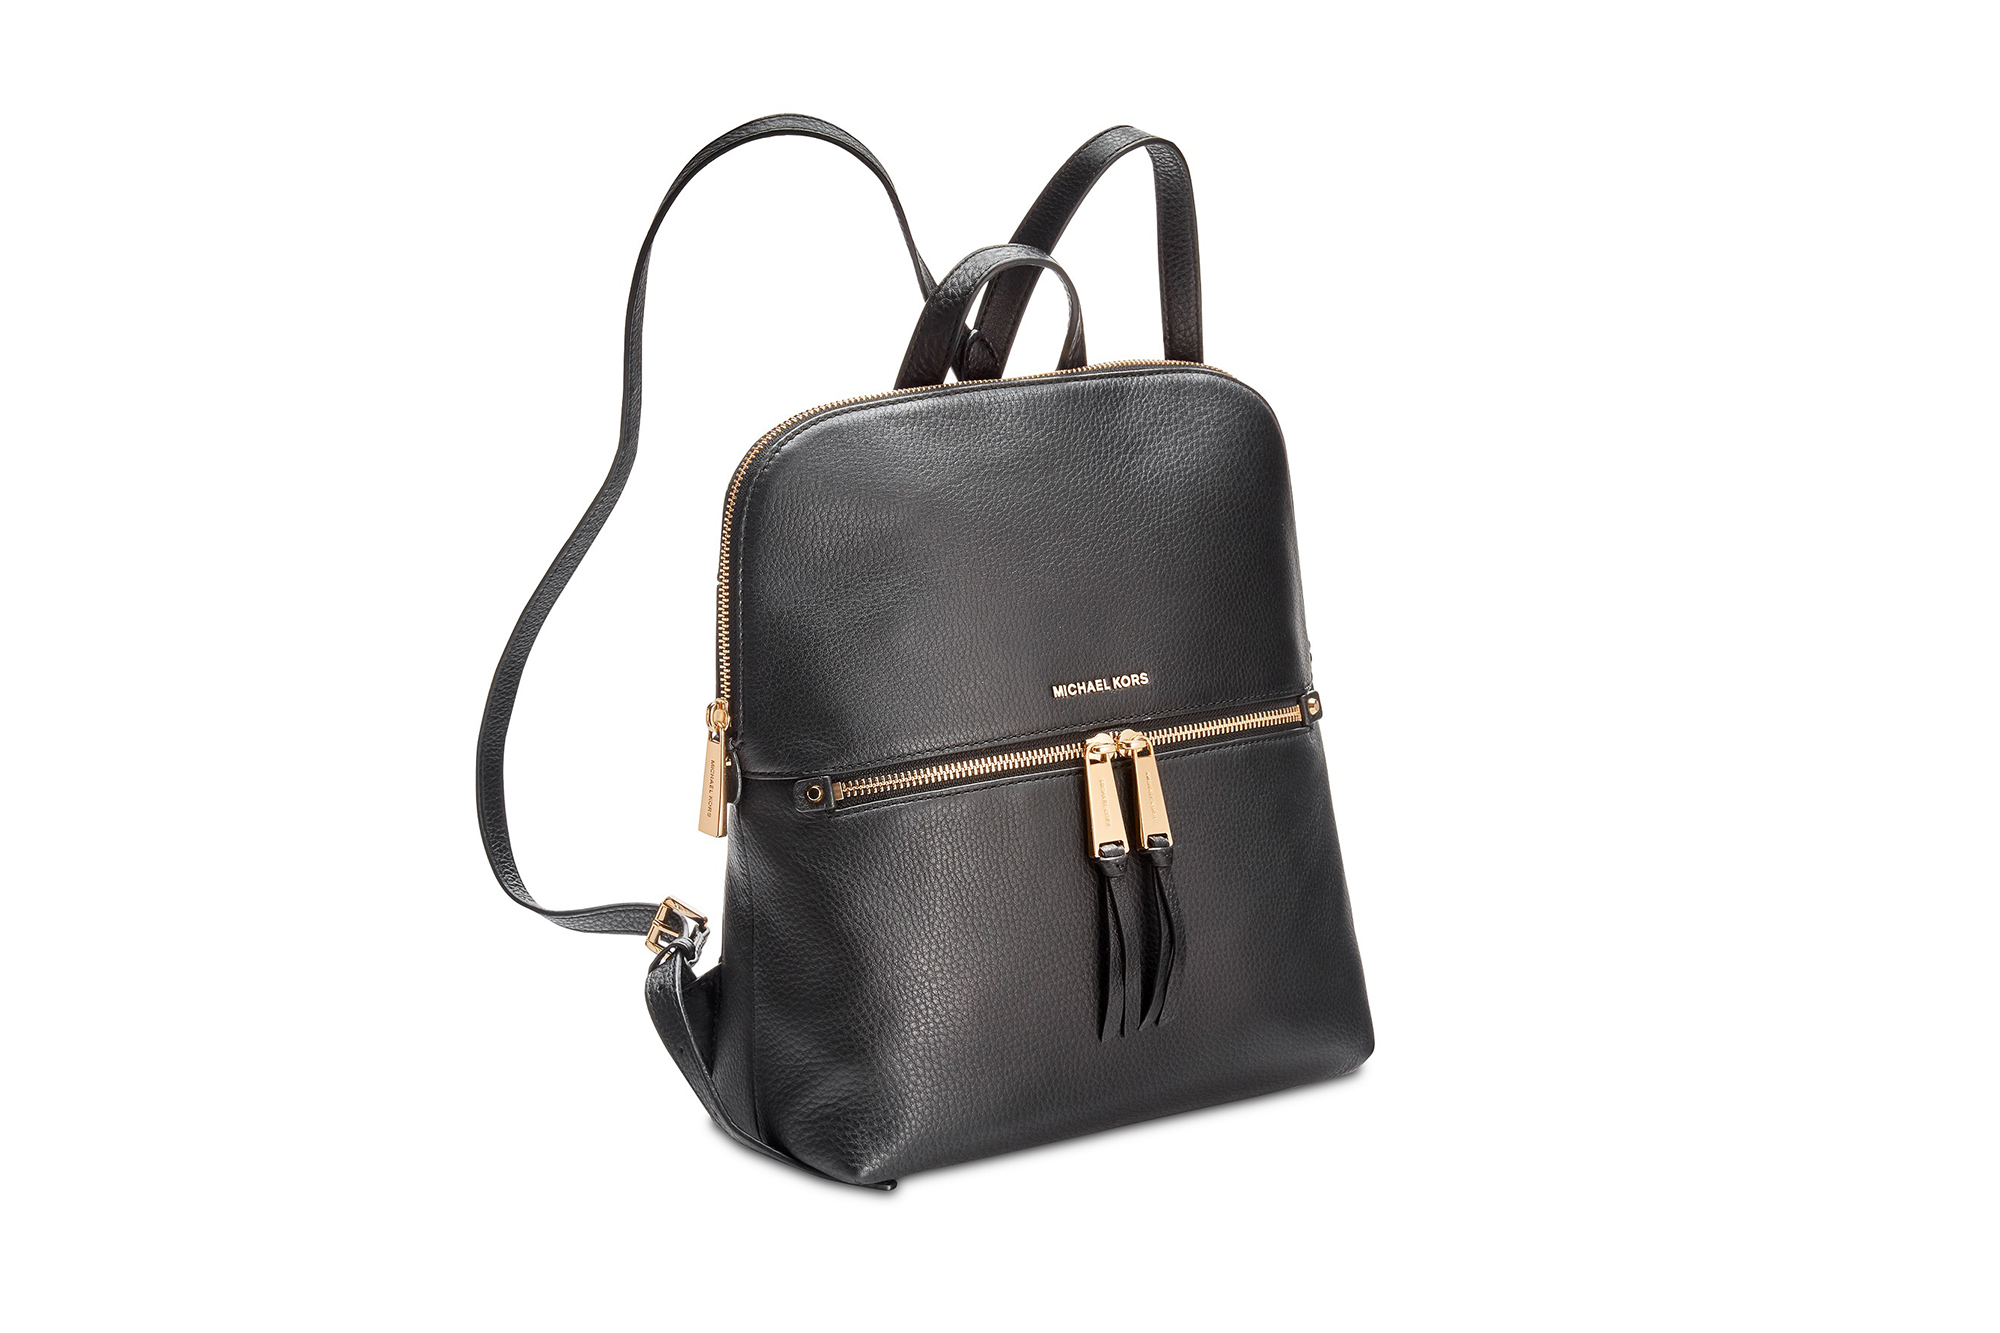 macys rhea backpack